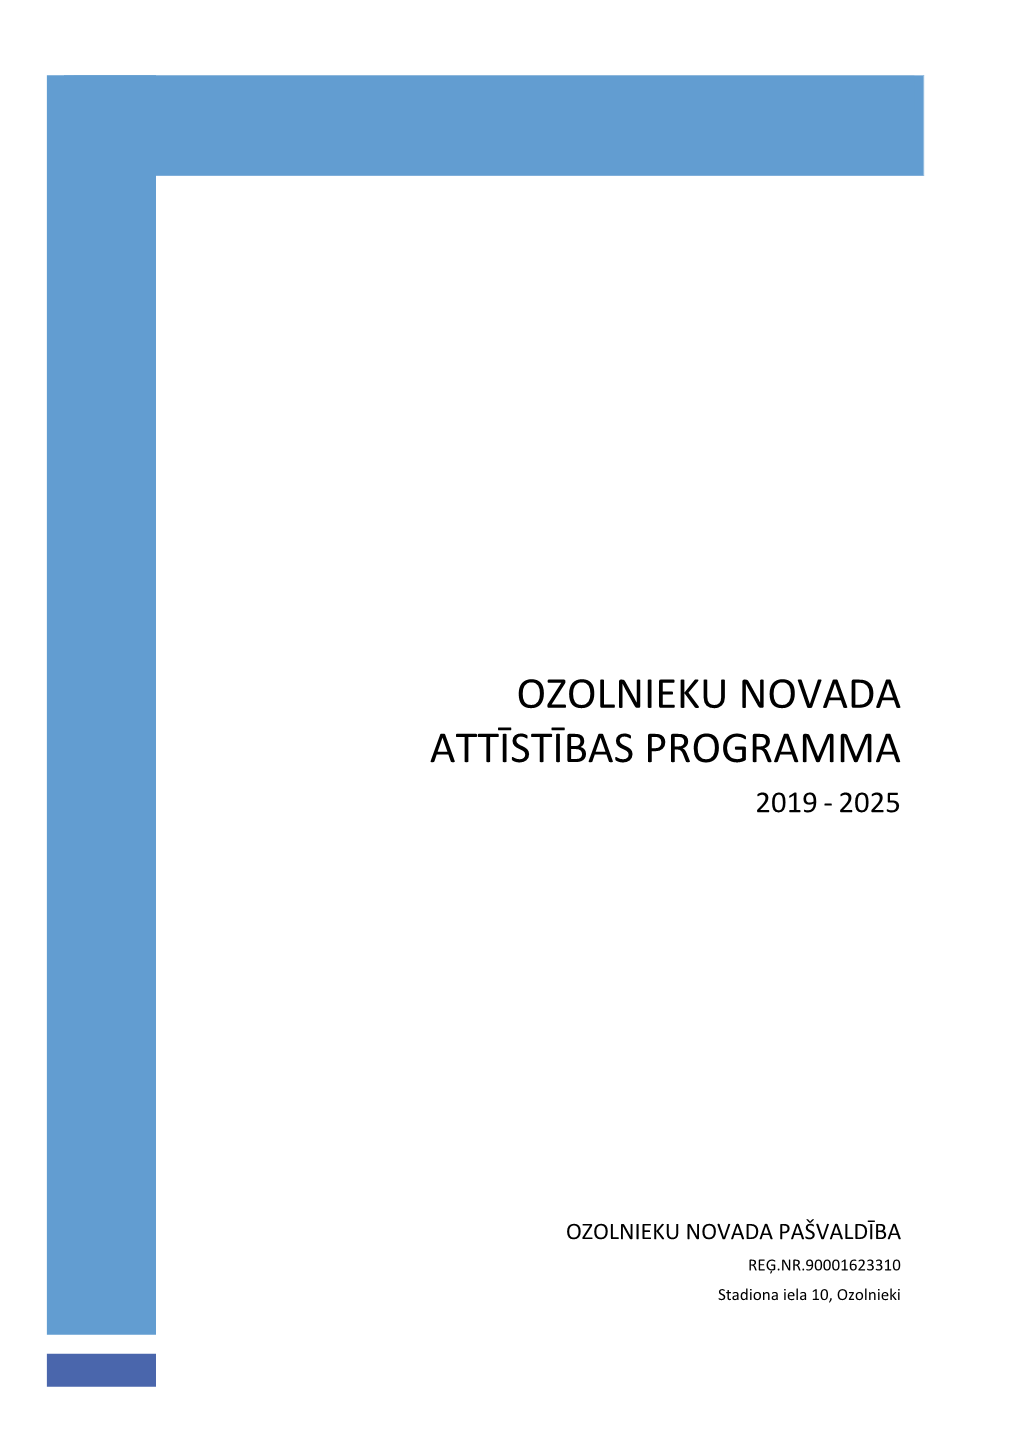 Ozolnieku Novada Attīstības Programma 2019 - 2025